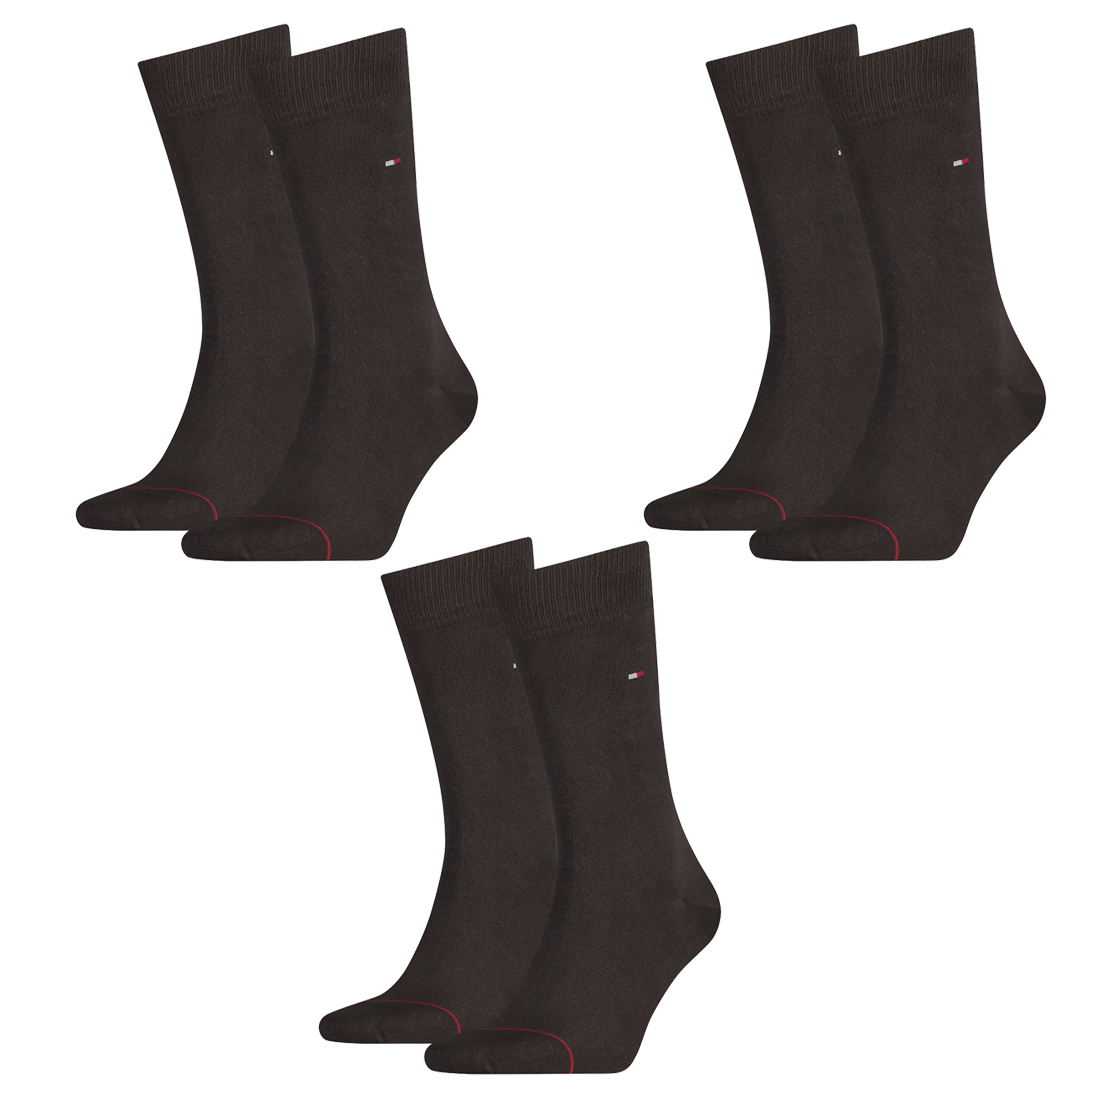 6 Paar TOMMY HILFIGER Classic Socken Gr. 39 - 49 Herren Business Socken 937 - kensington brown, 47-49 von Tommy Hilfiger